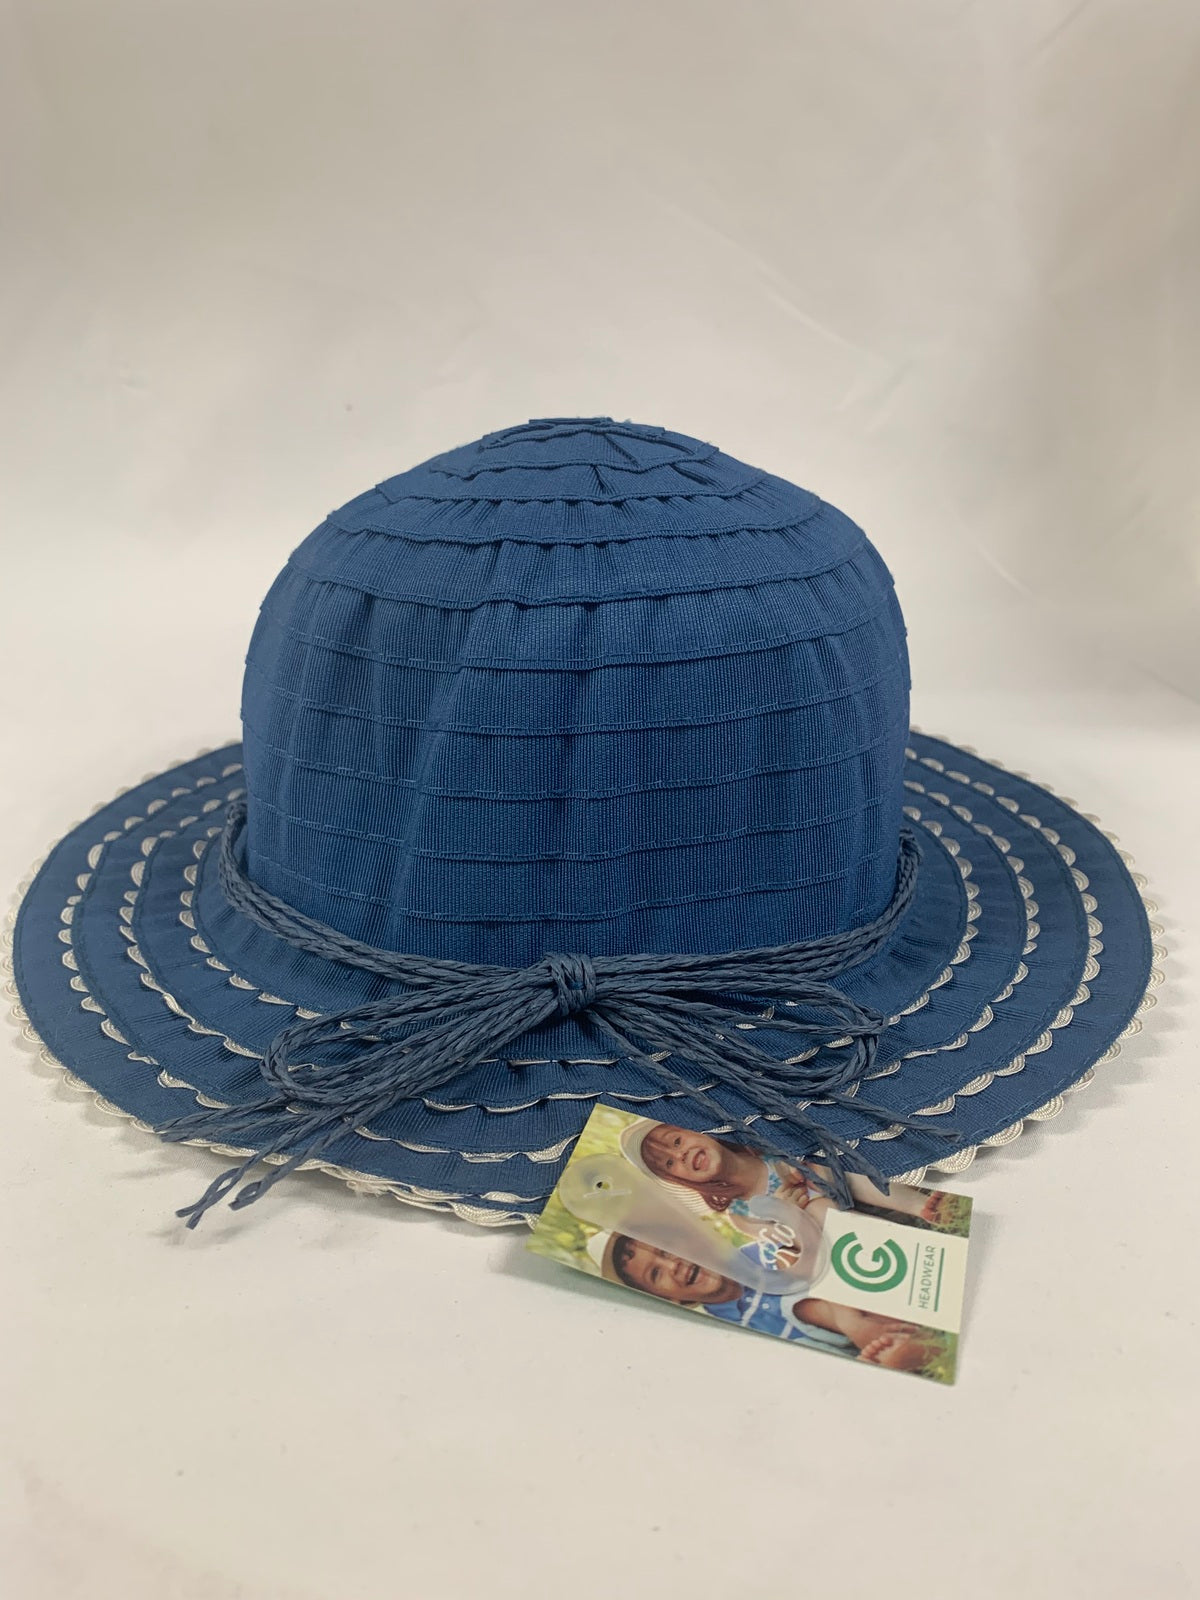 Kids Child  Blue  Summer  Bucket Hat Cap